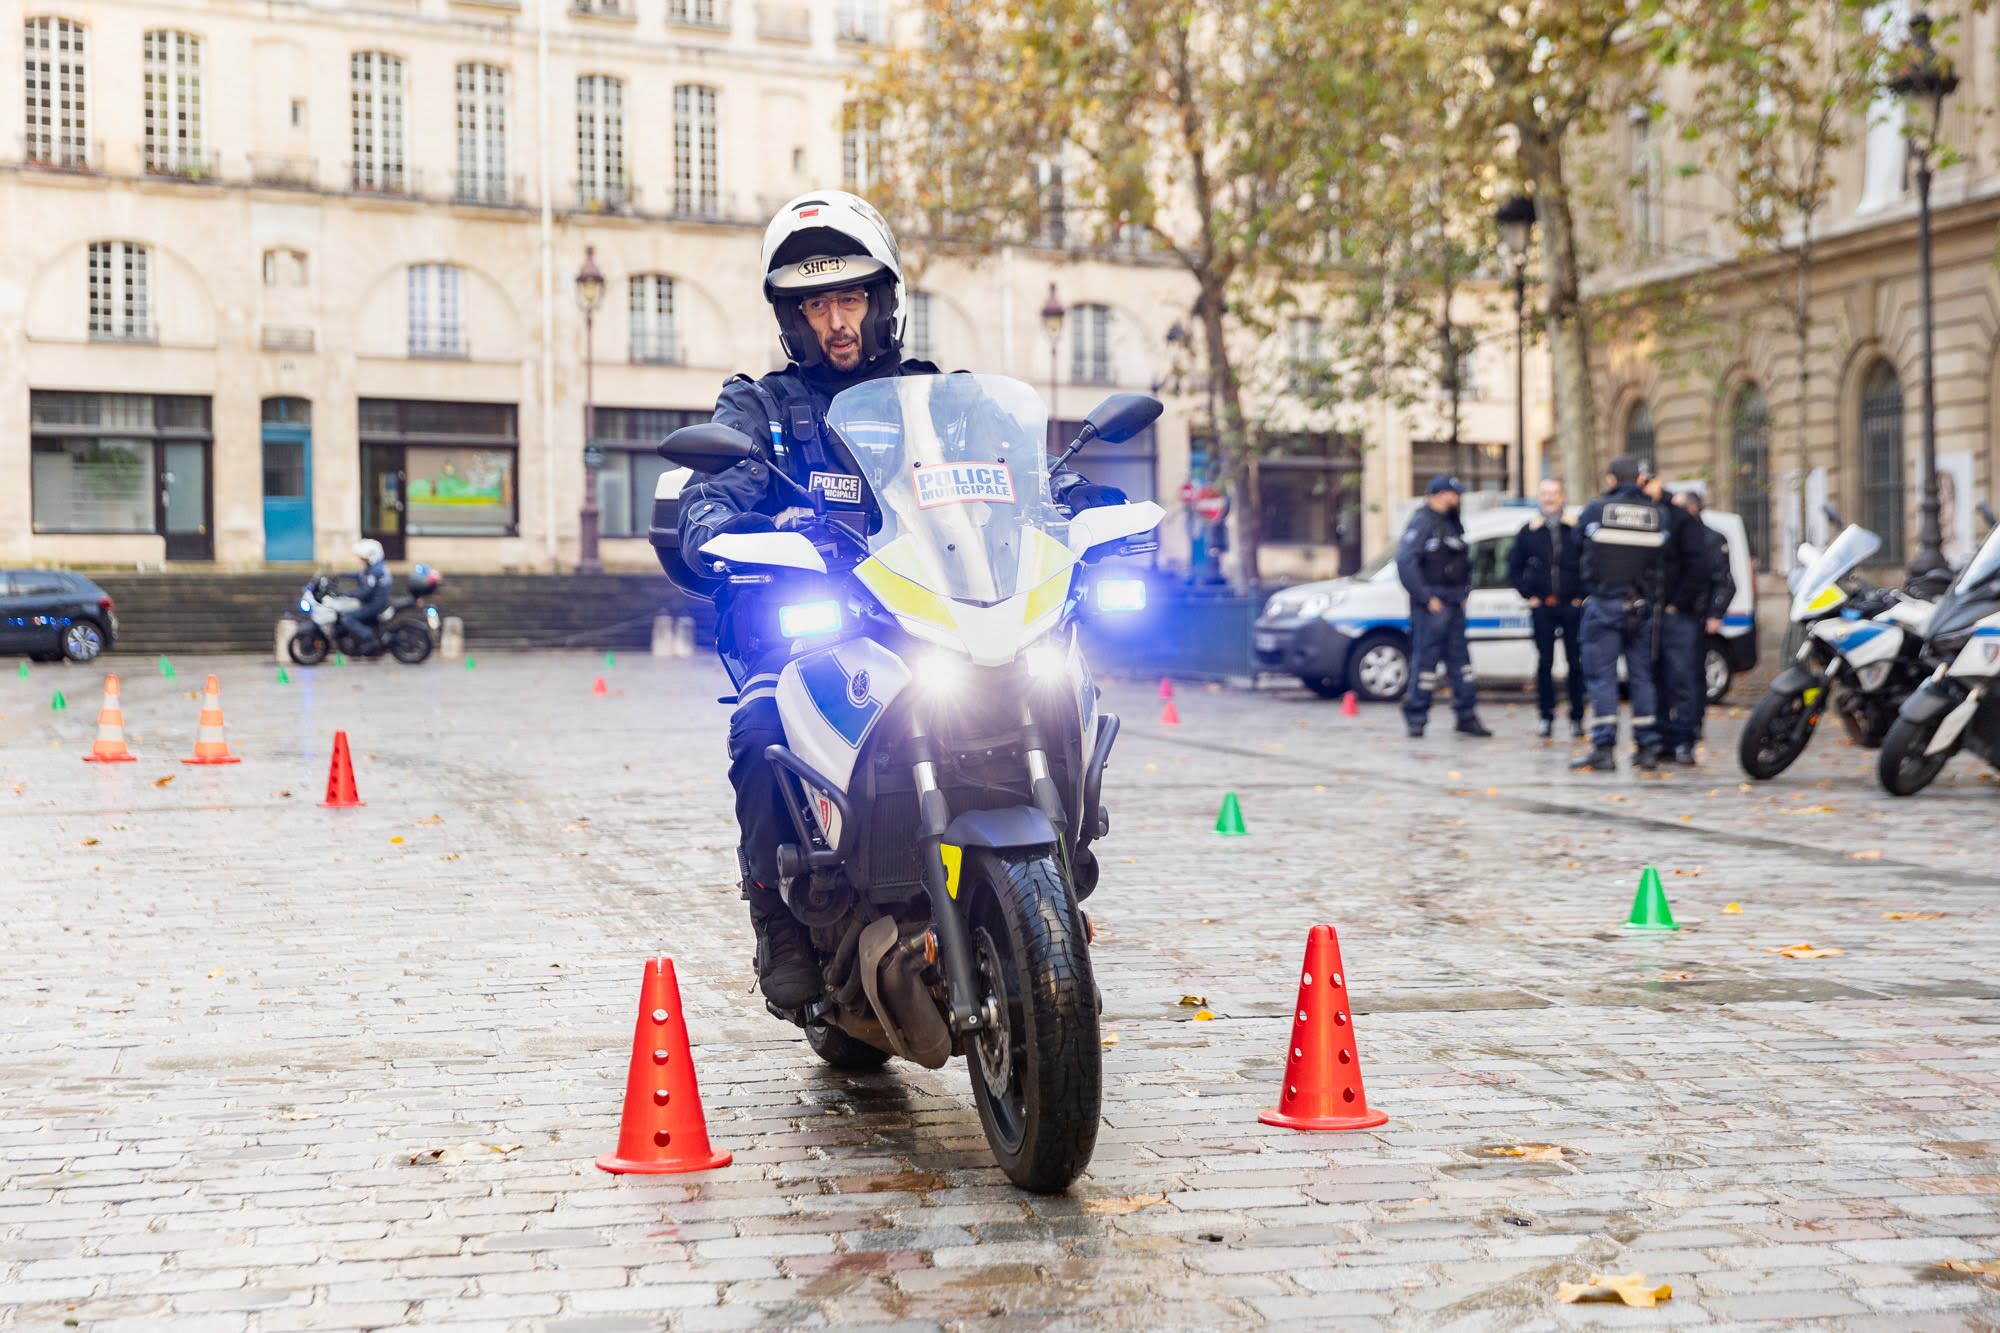 Le recrutement des agents de police municipale (F/H) - Ville de Paris